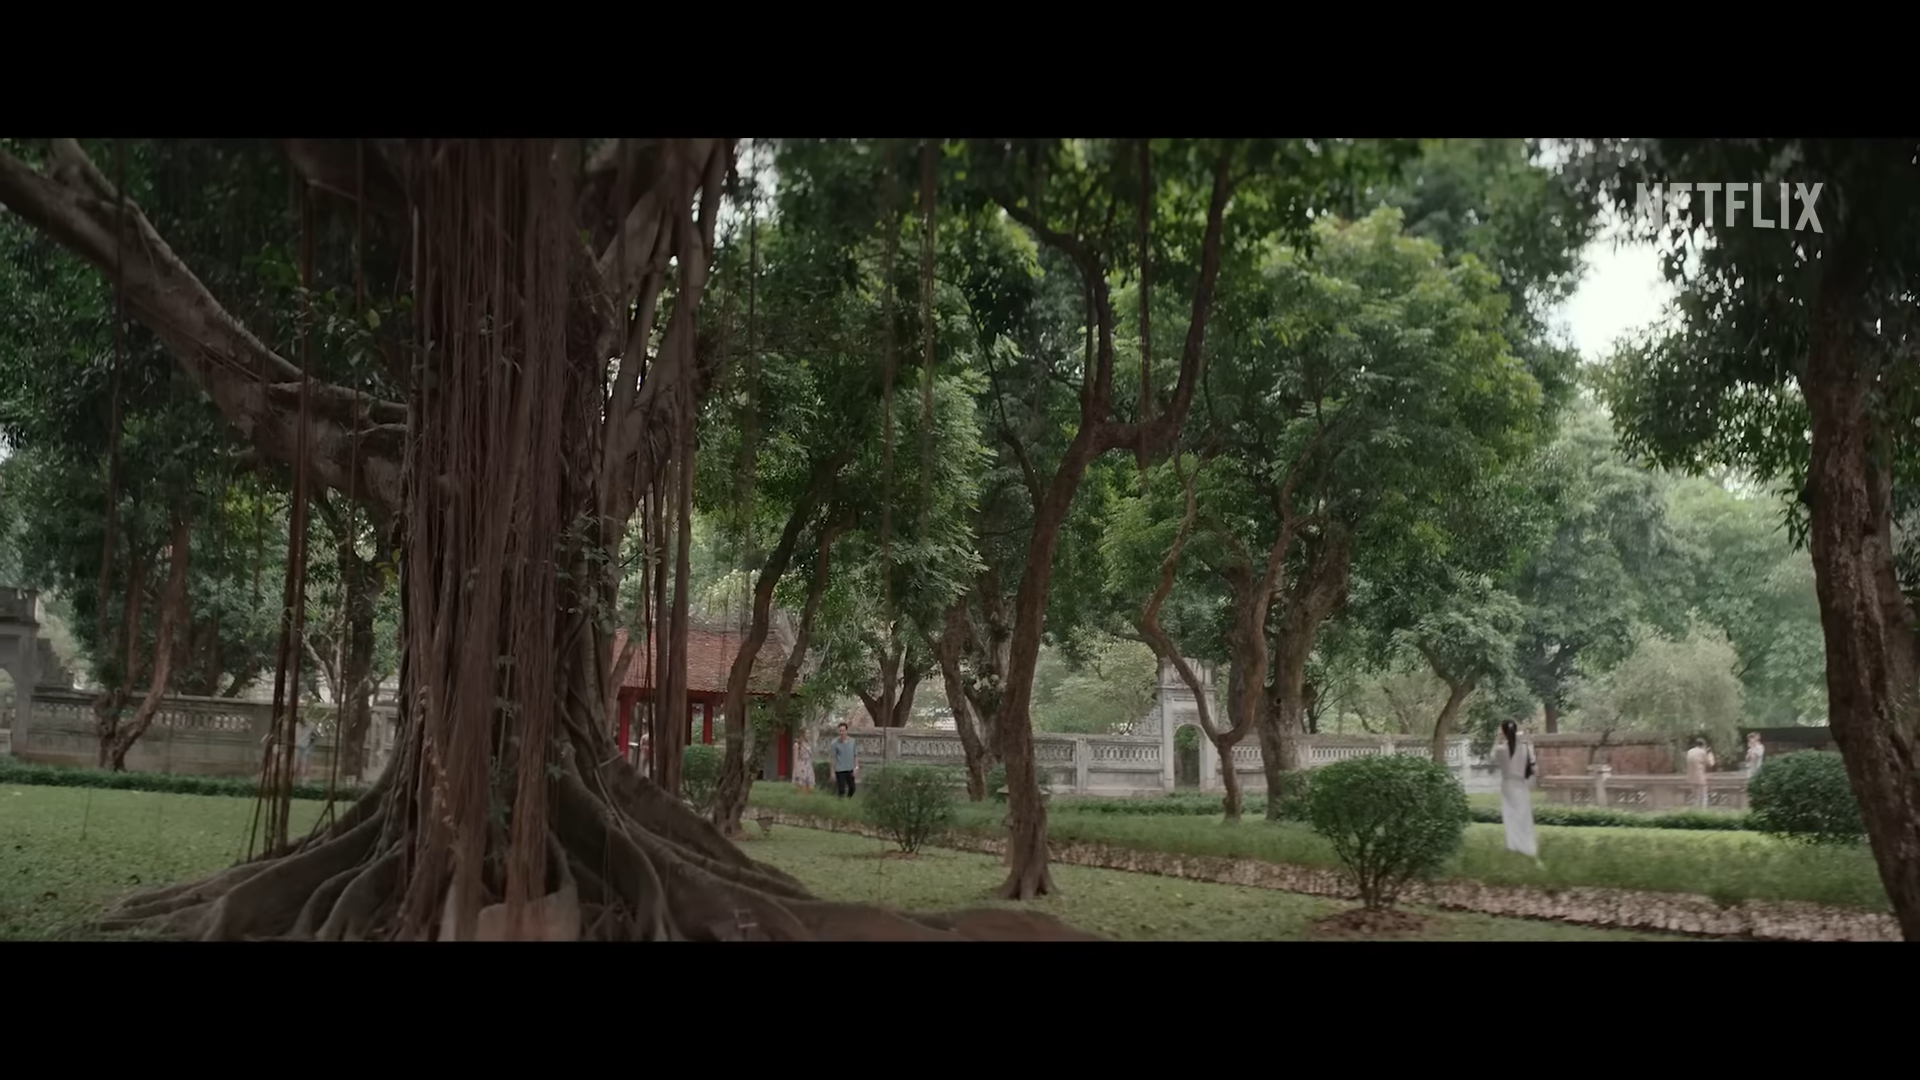 Một số hình ảnh làng quê, con người Việt Nam trong trailer phim. Ảnh: Chụp màn hình